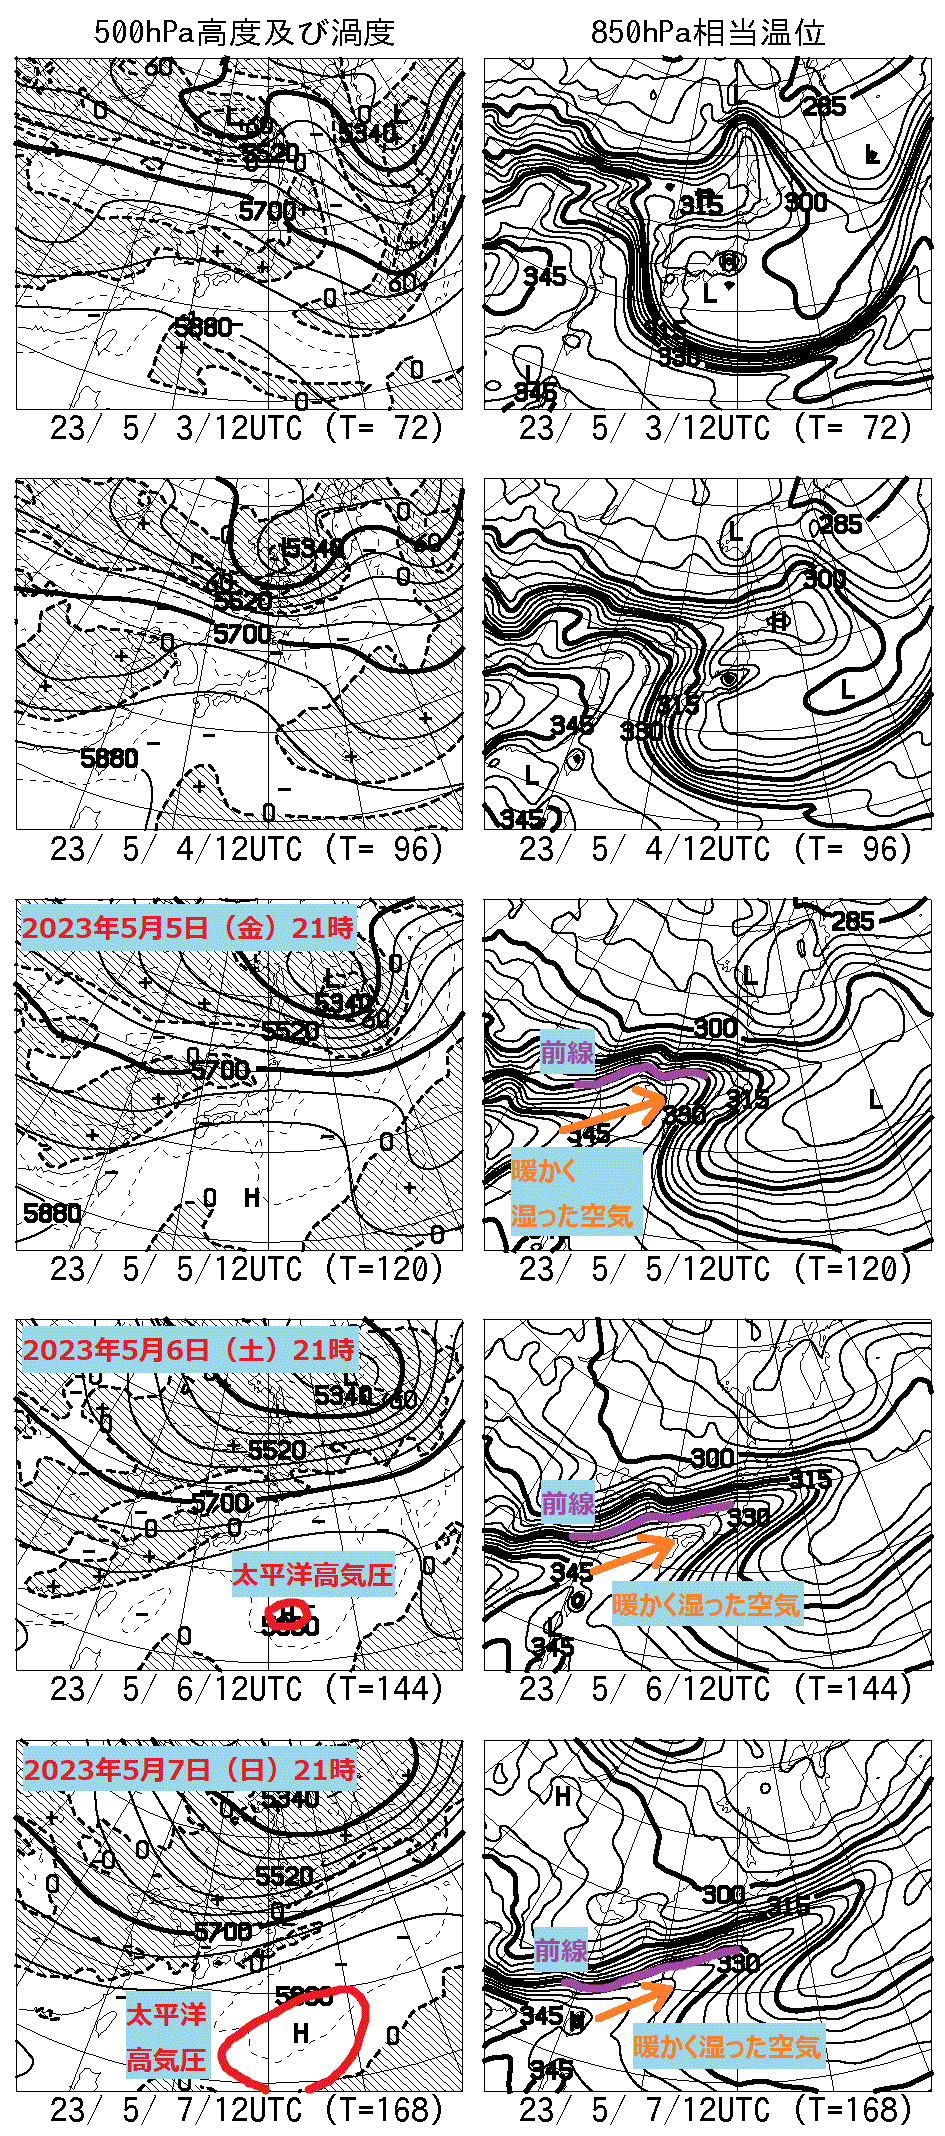 お天気コラム 2023年GW週間予報天気図 【登山口ナビ】